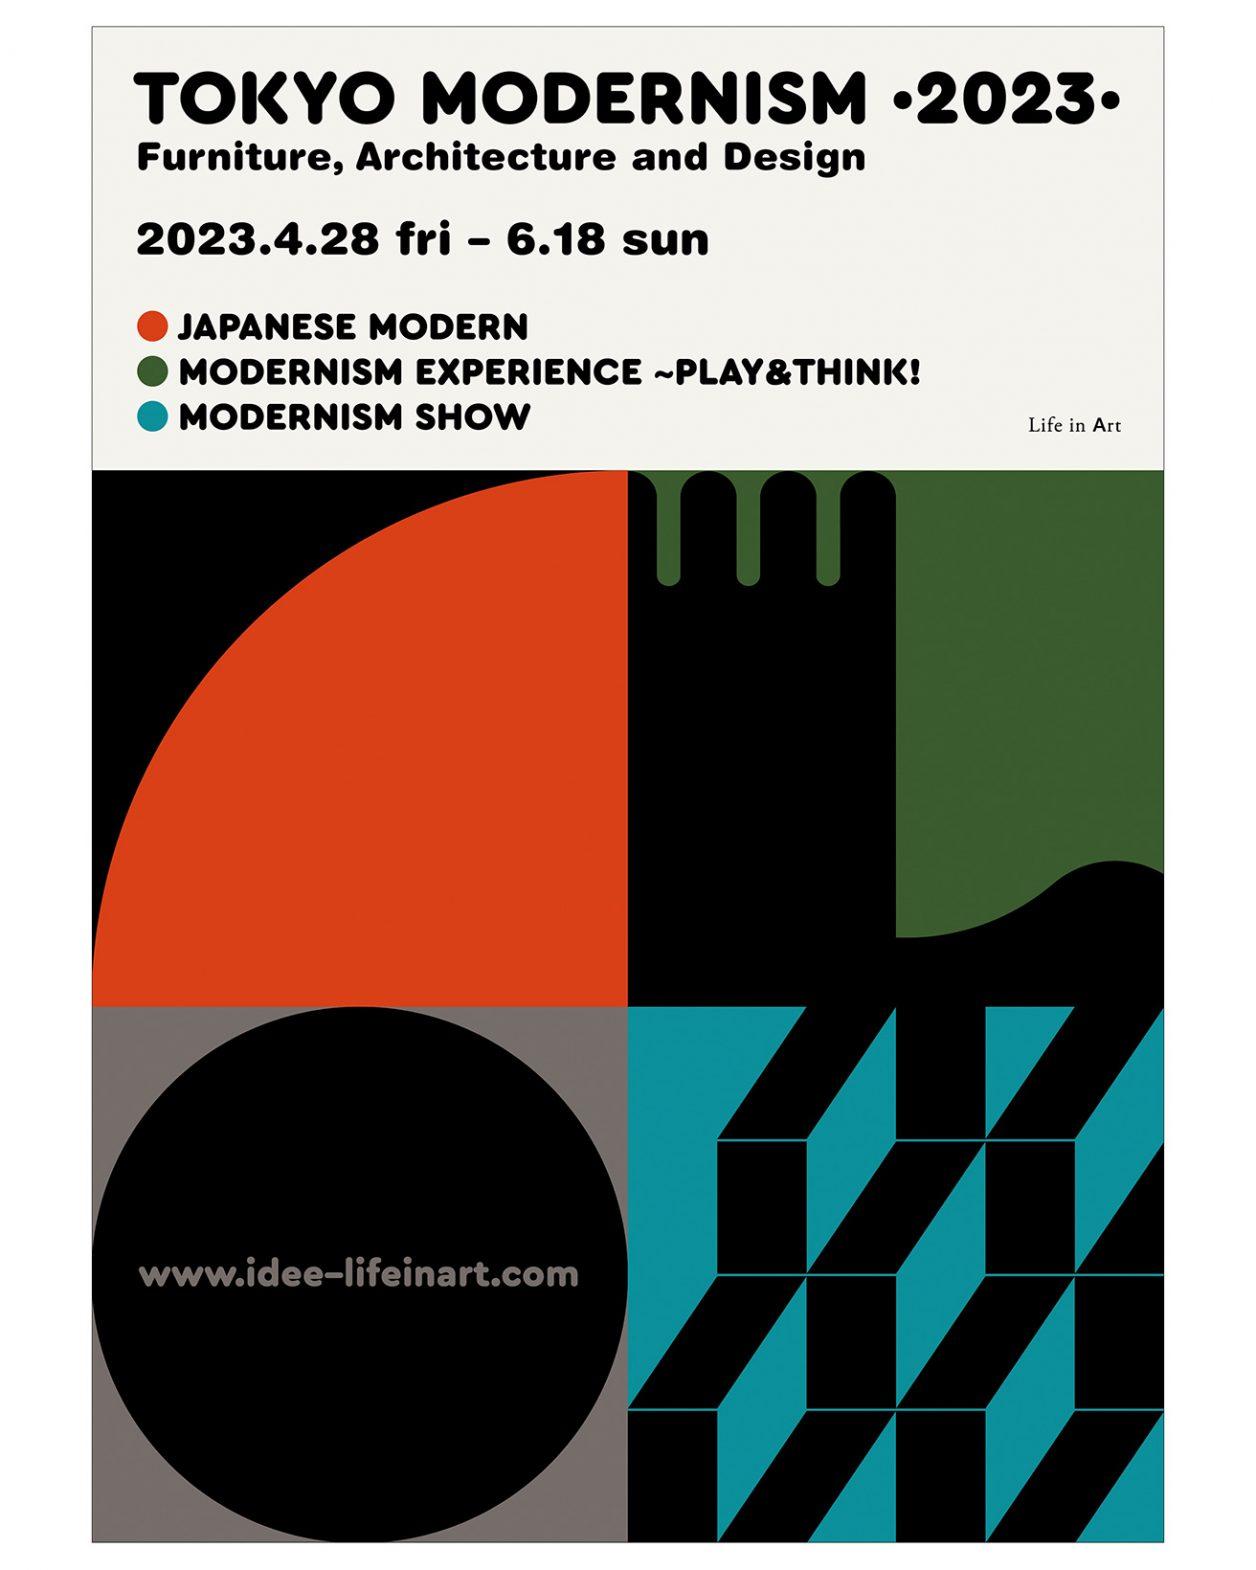 モダニズムの名作デザインに触れる2ヶ月間。『Life in Art “TOKYO MODERNISM 2023”』が開催。